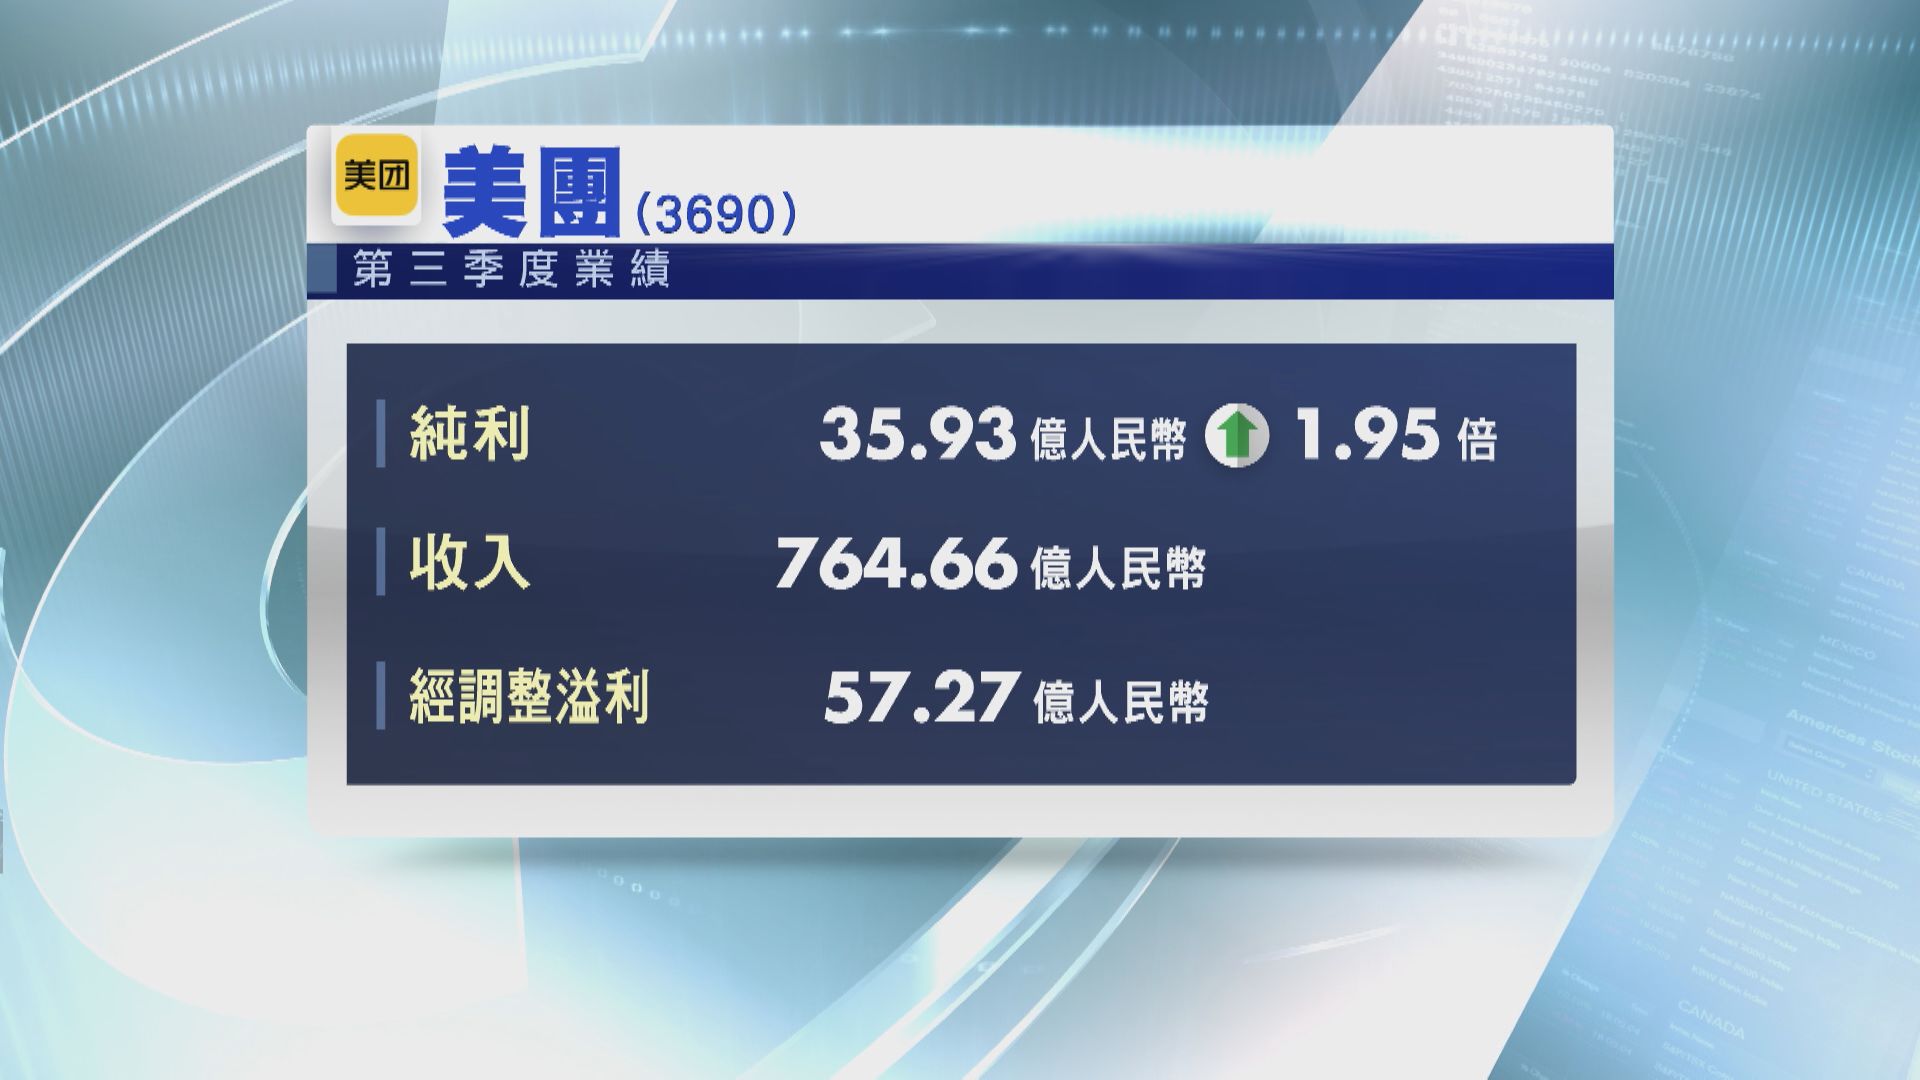 【業績速報】美團上季經調整溢利升62.4% 超預期